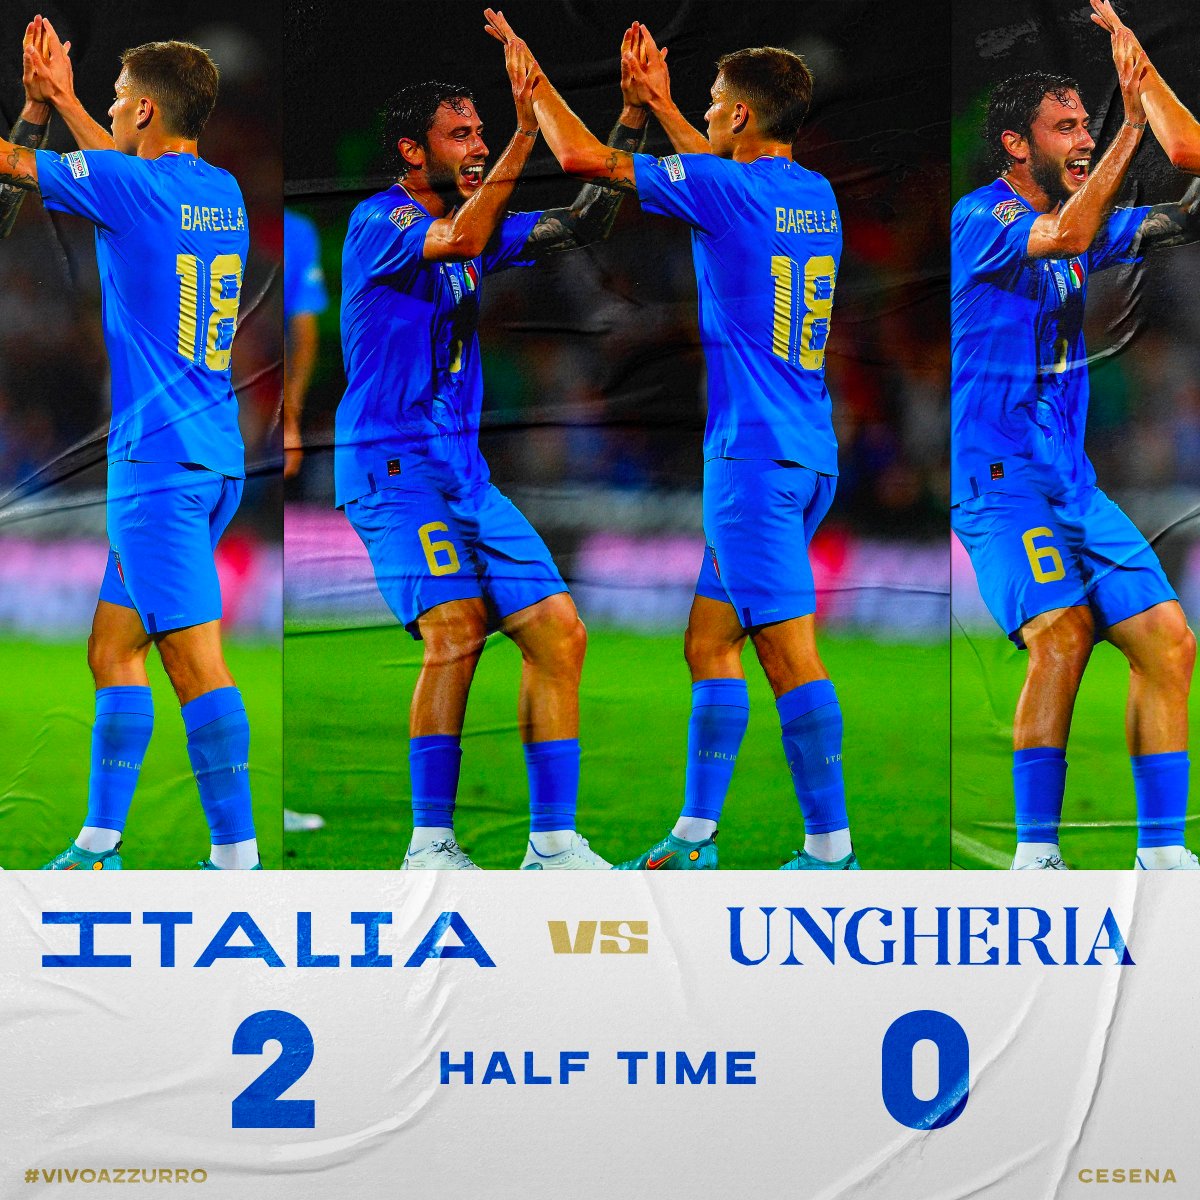 🔴 L'Italie mène 2-0 face à la Hongrie à la mi-temps de son match !

#NationsLeague | #ITAHUN